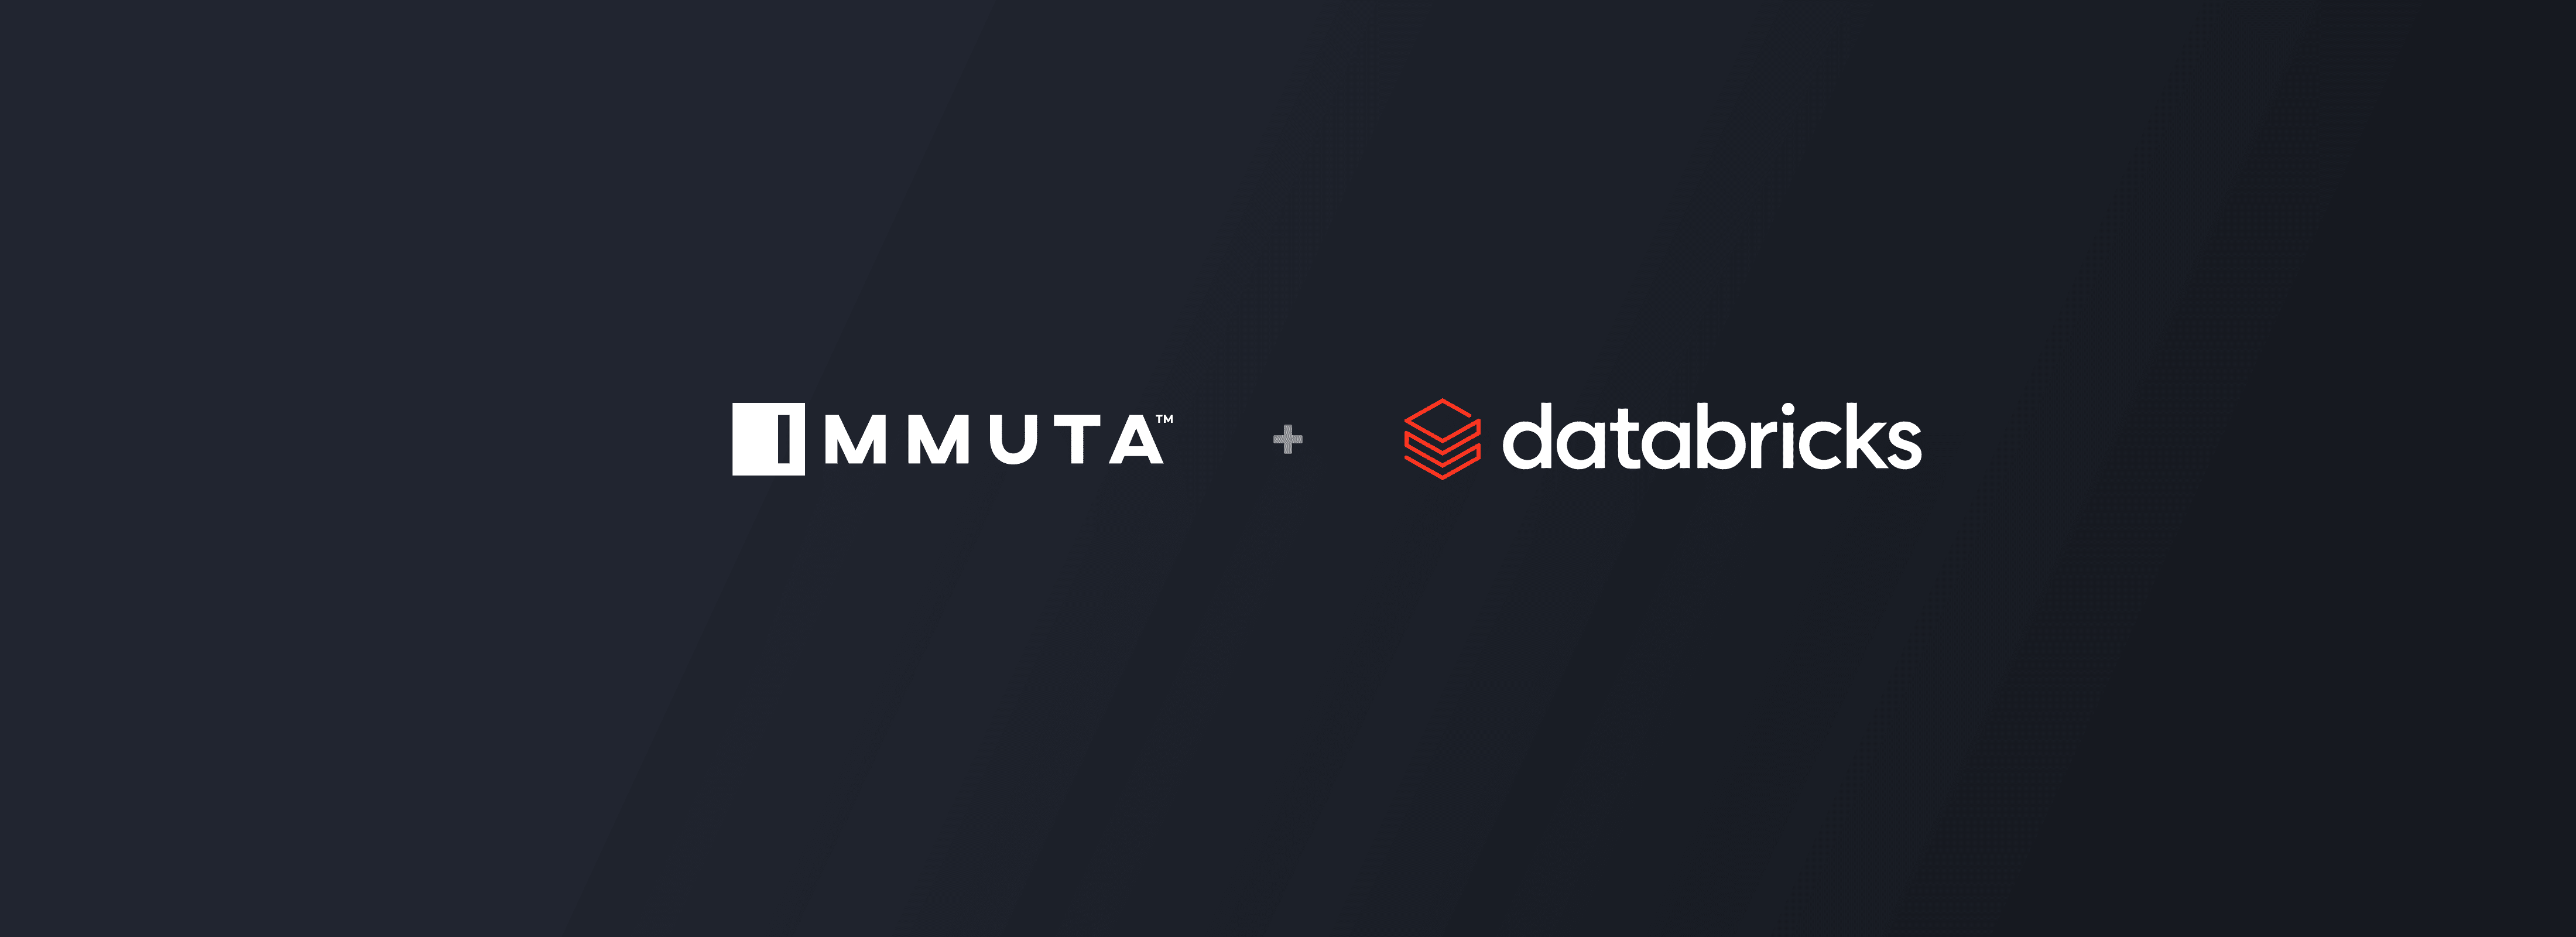 Databricks and Immuta